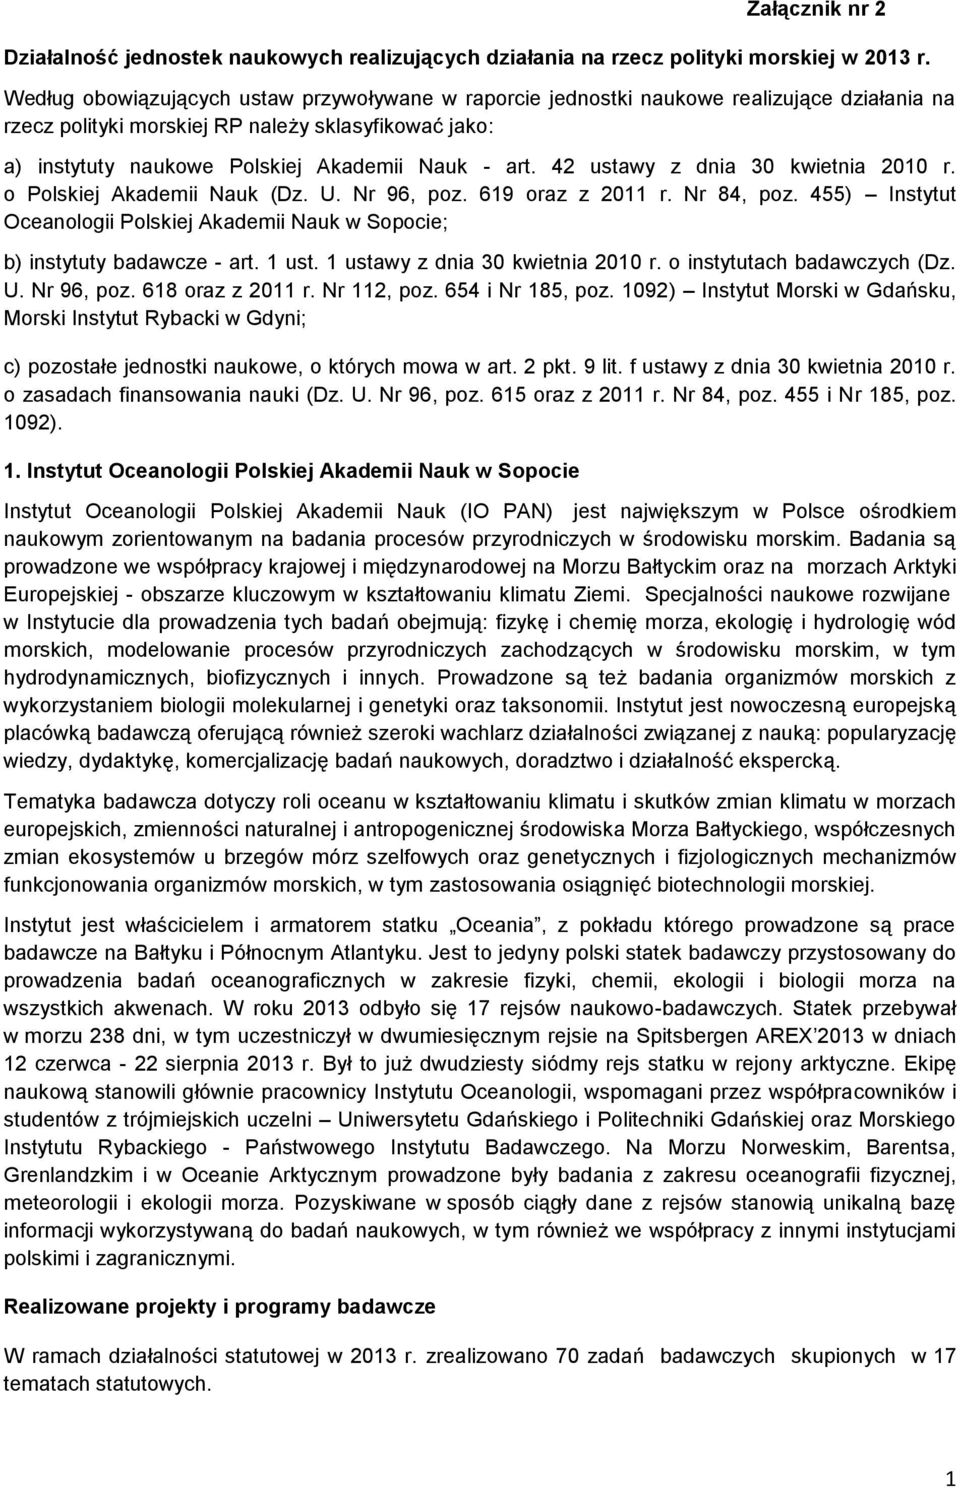 42 ustawy z dnia 30 kwietnia 2010 r. o Polskiej Akademii Nauk (Dz. U. Nr 96, poz. 619 oraz z 2011 r. Nr 84, poz.